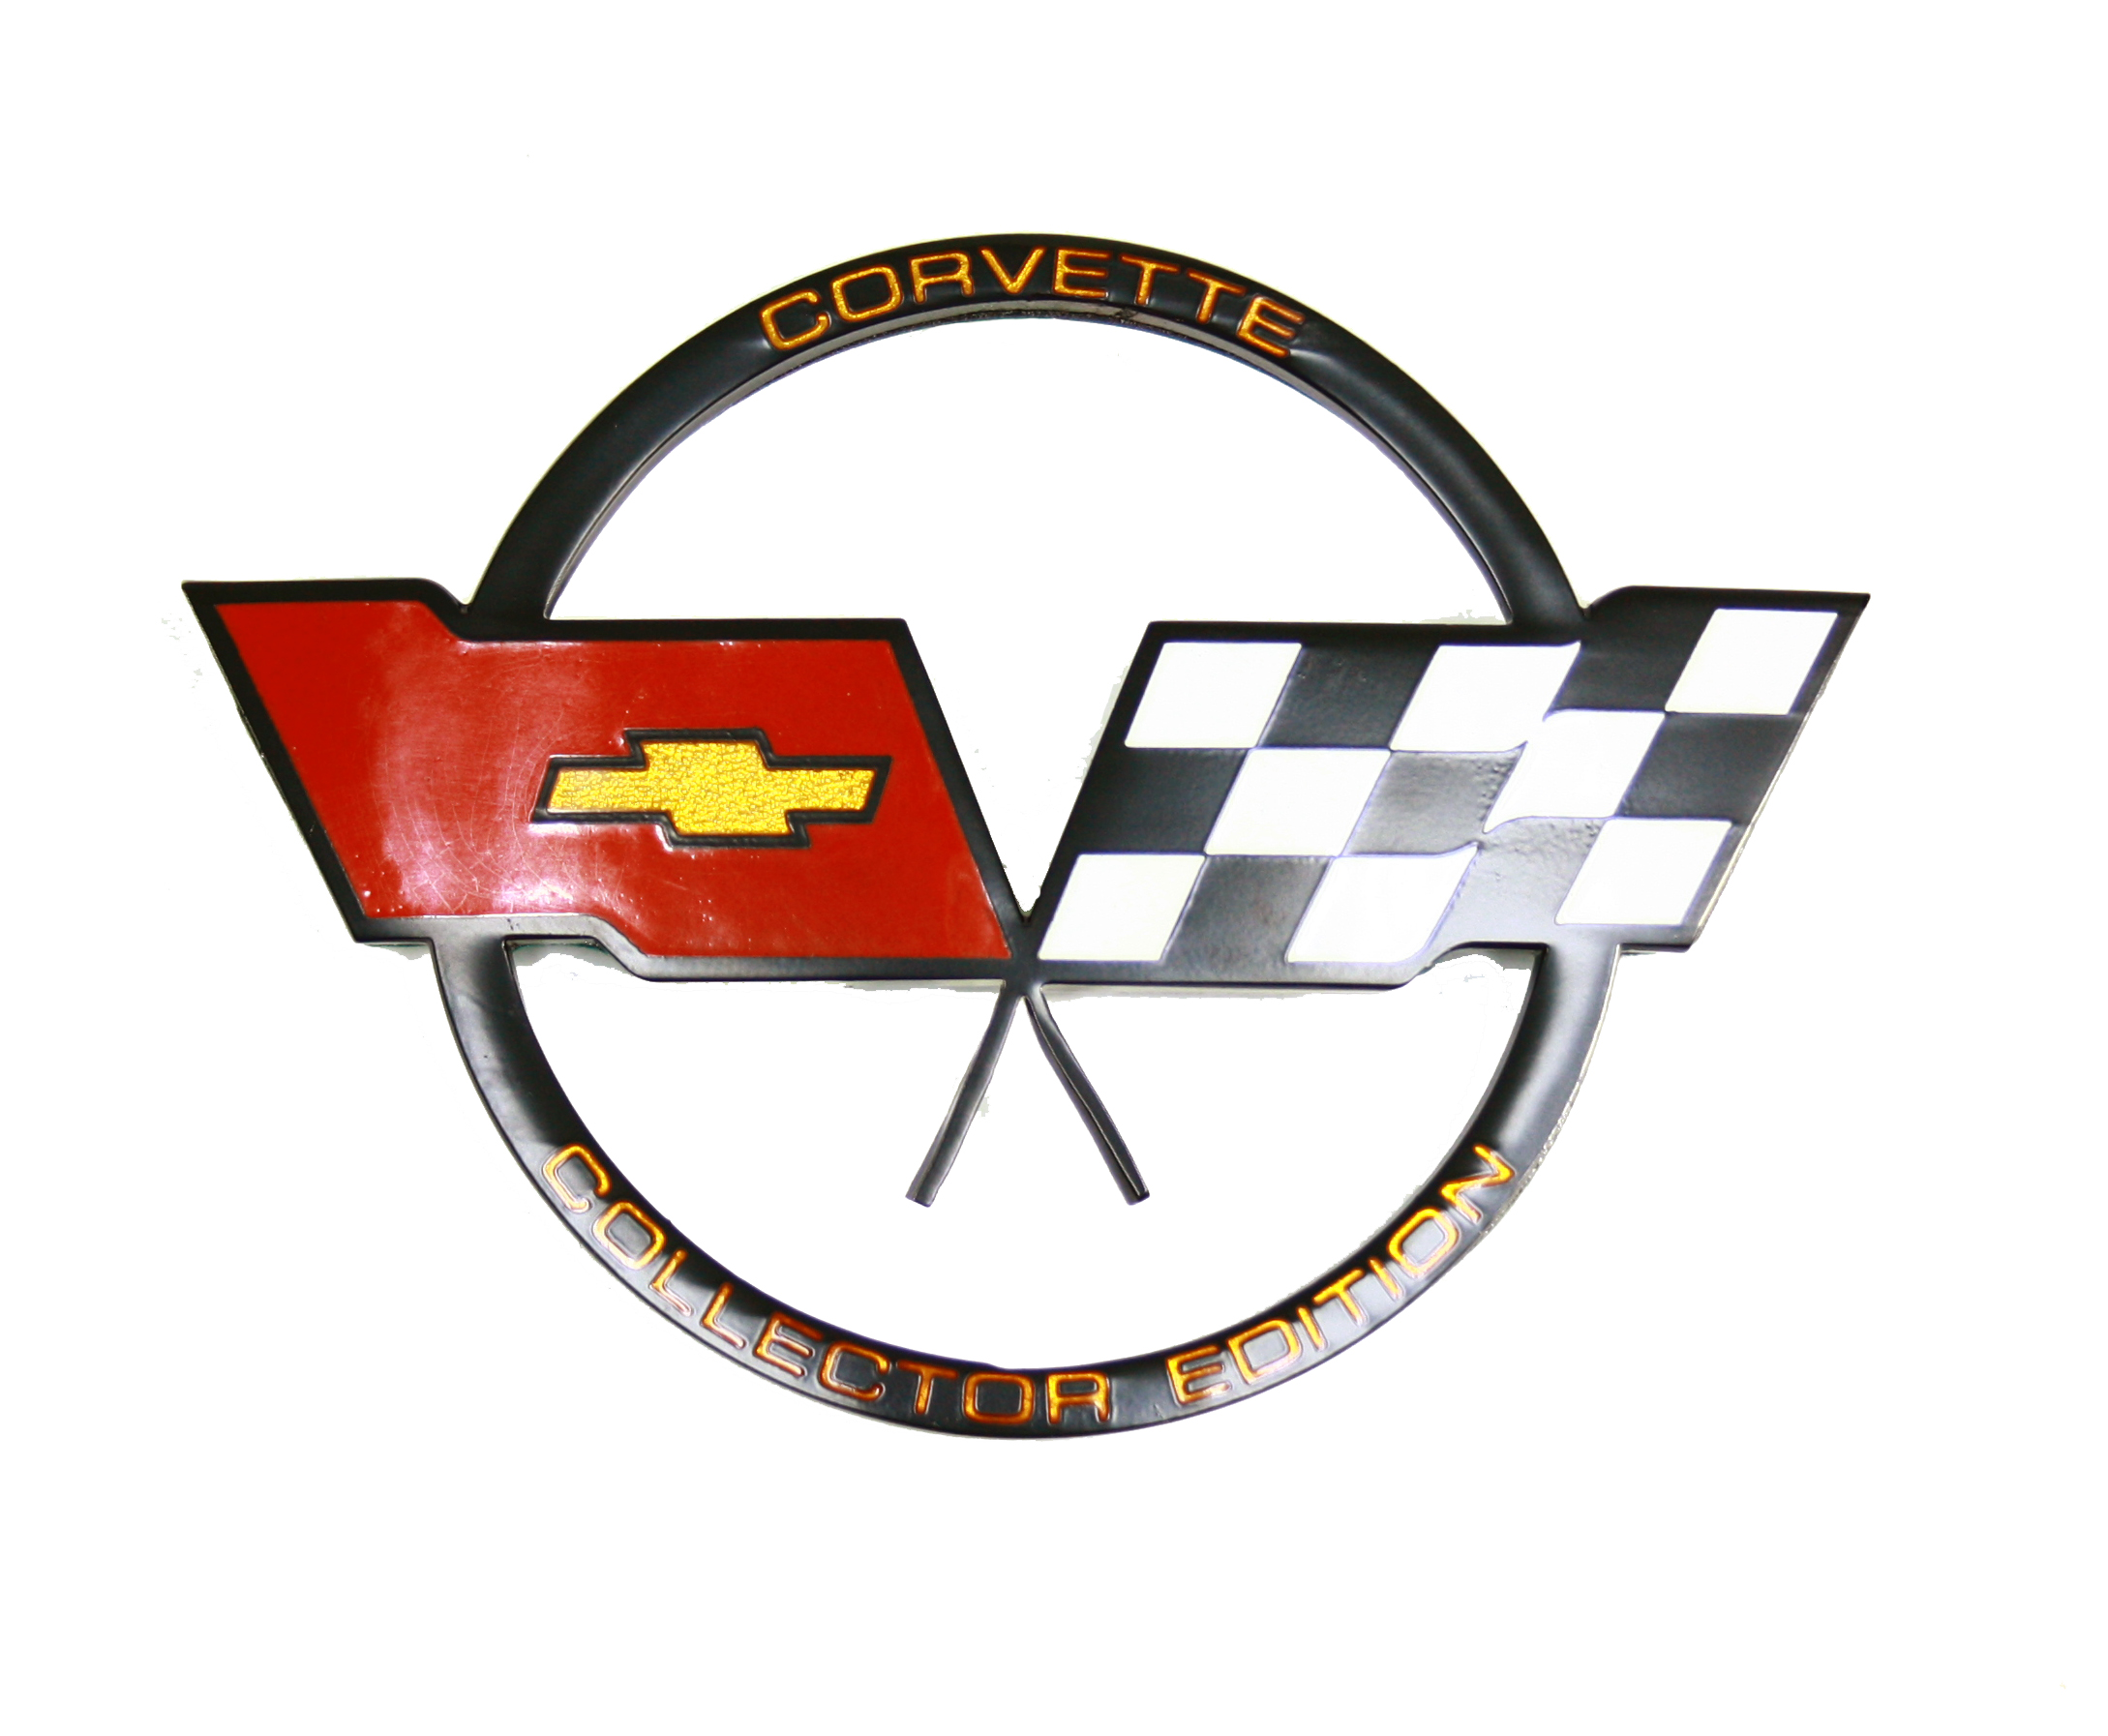 1982 Corvette Nose Emblem (collector Edition)